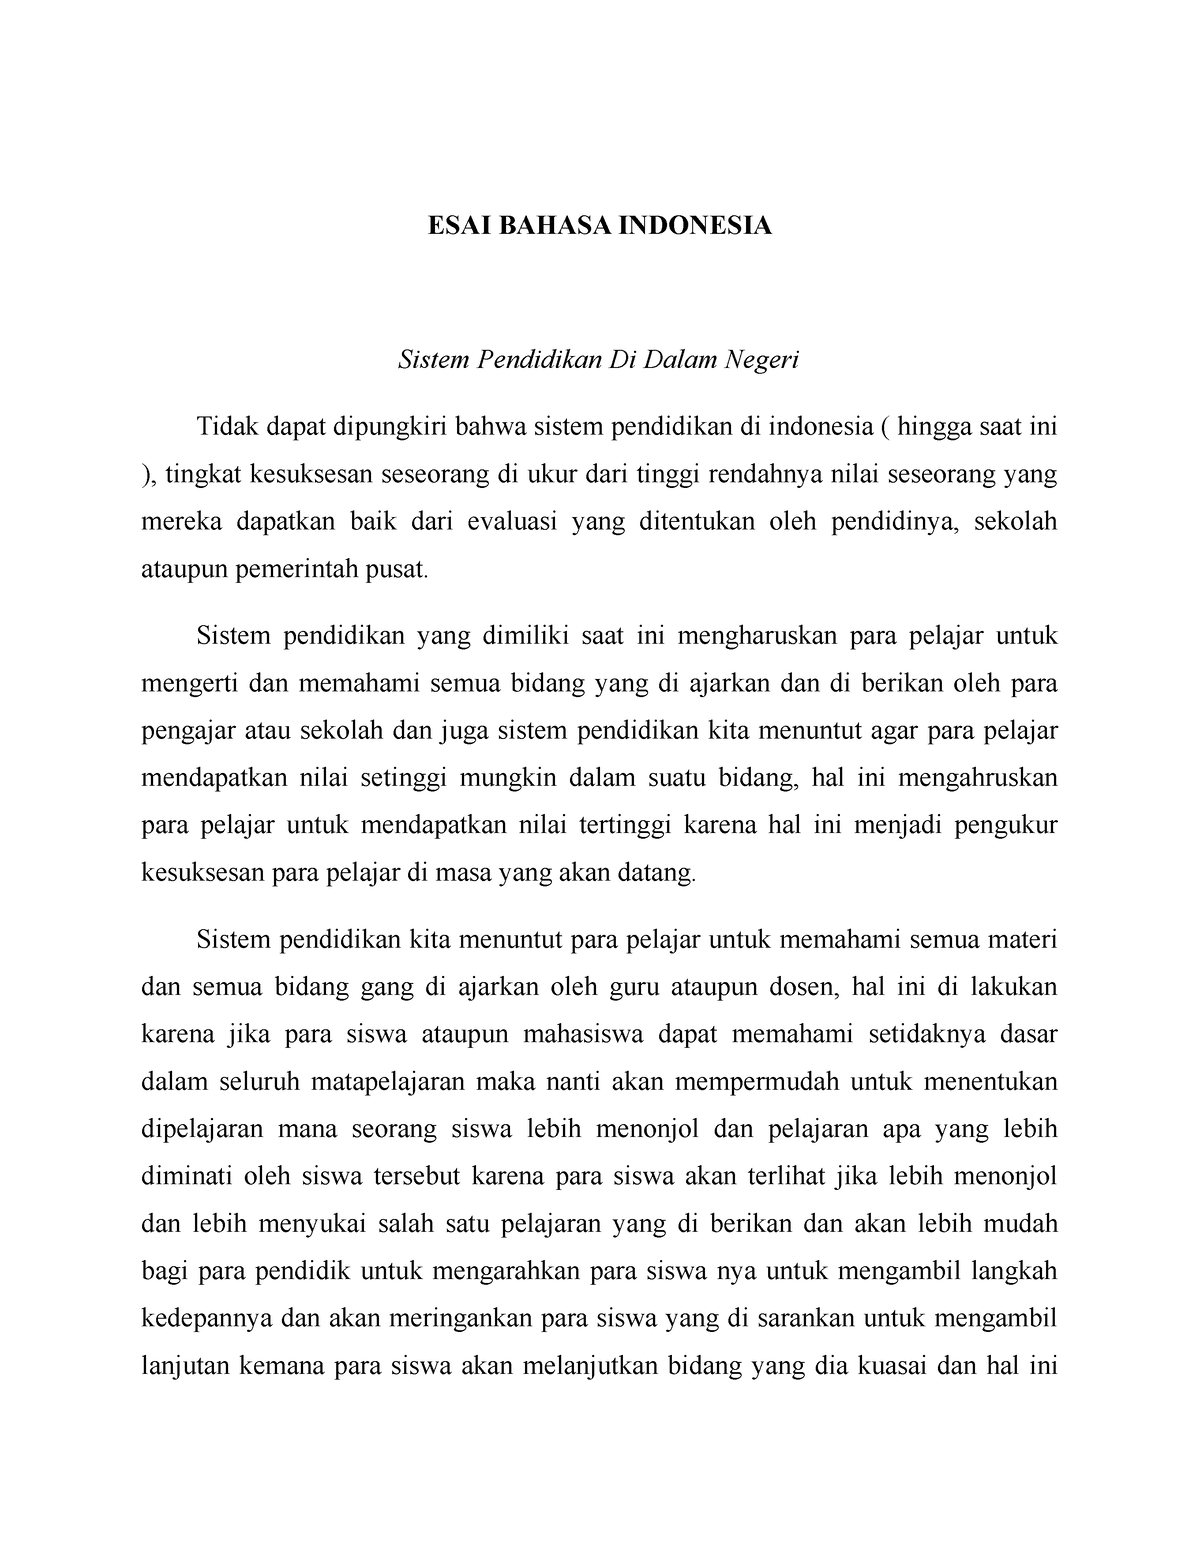 contoh essay bahasa indonesia